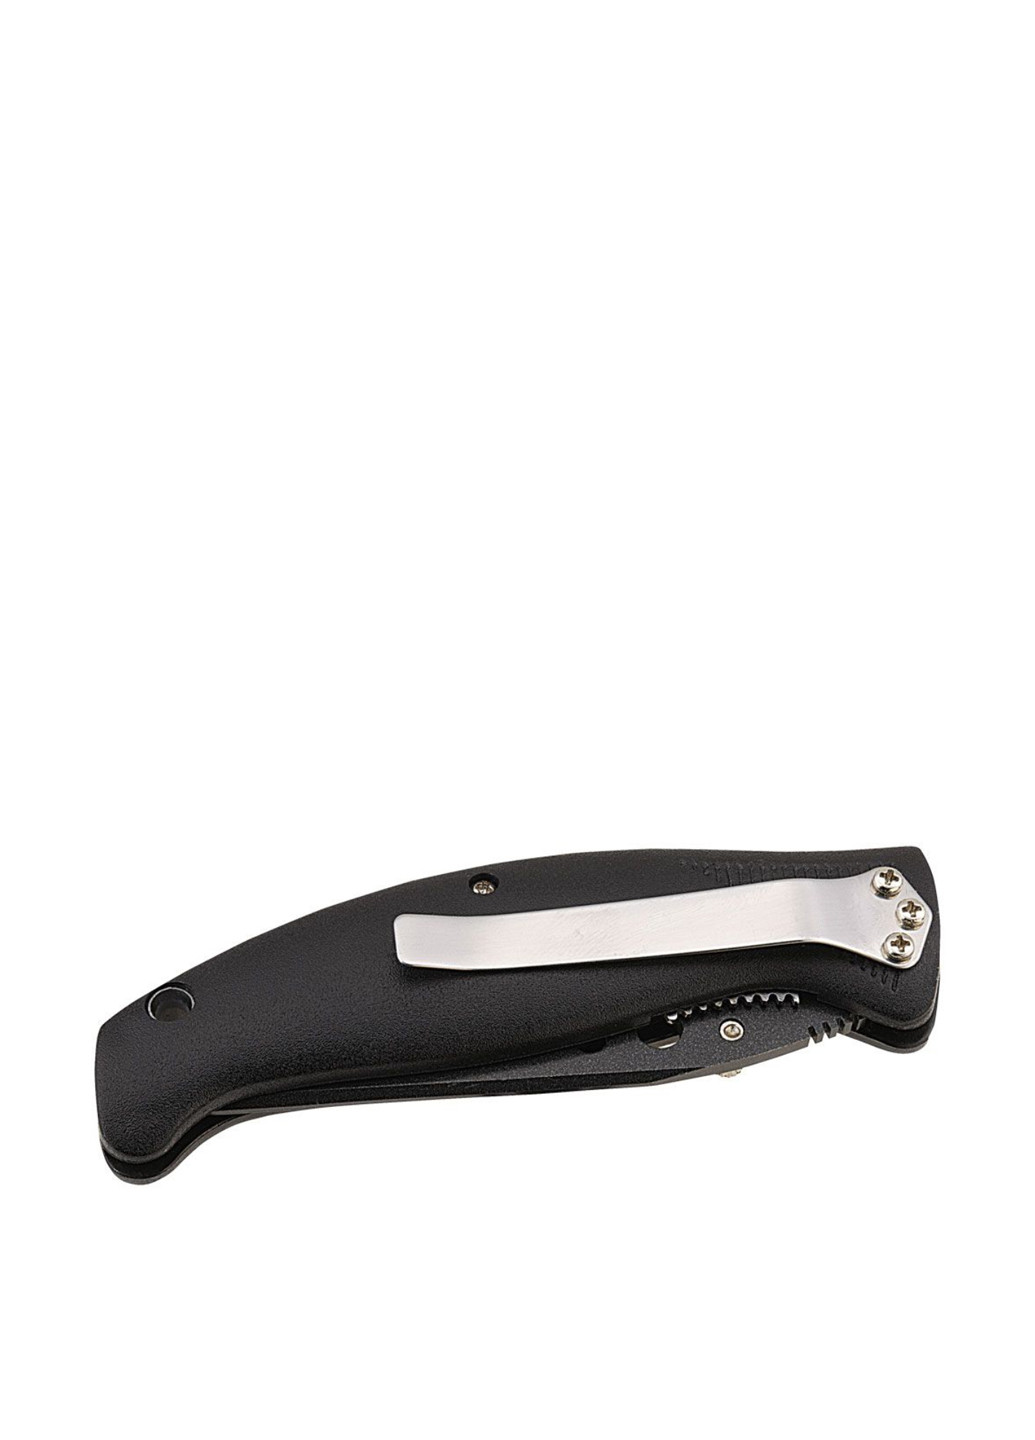 Нож складной, 11.4 см Schwarzwolf (208570360)